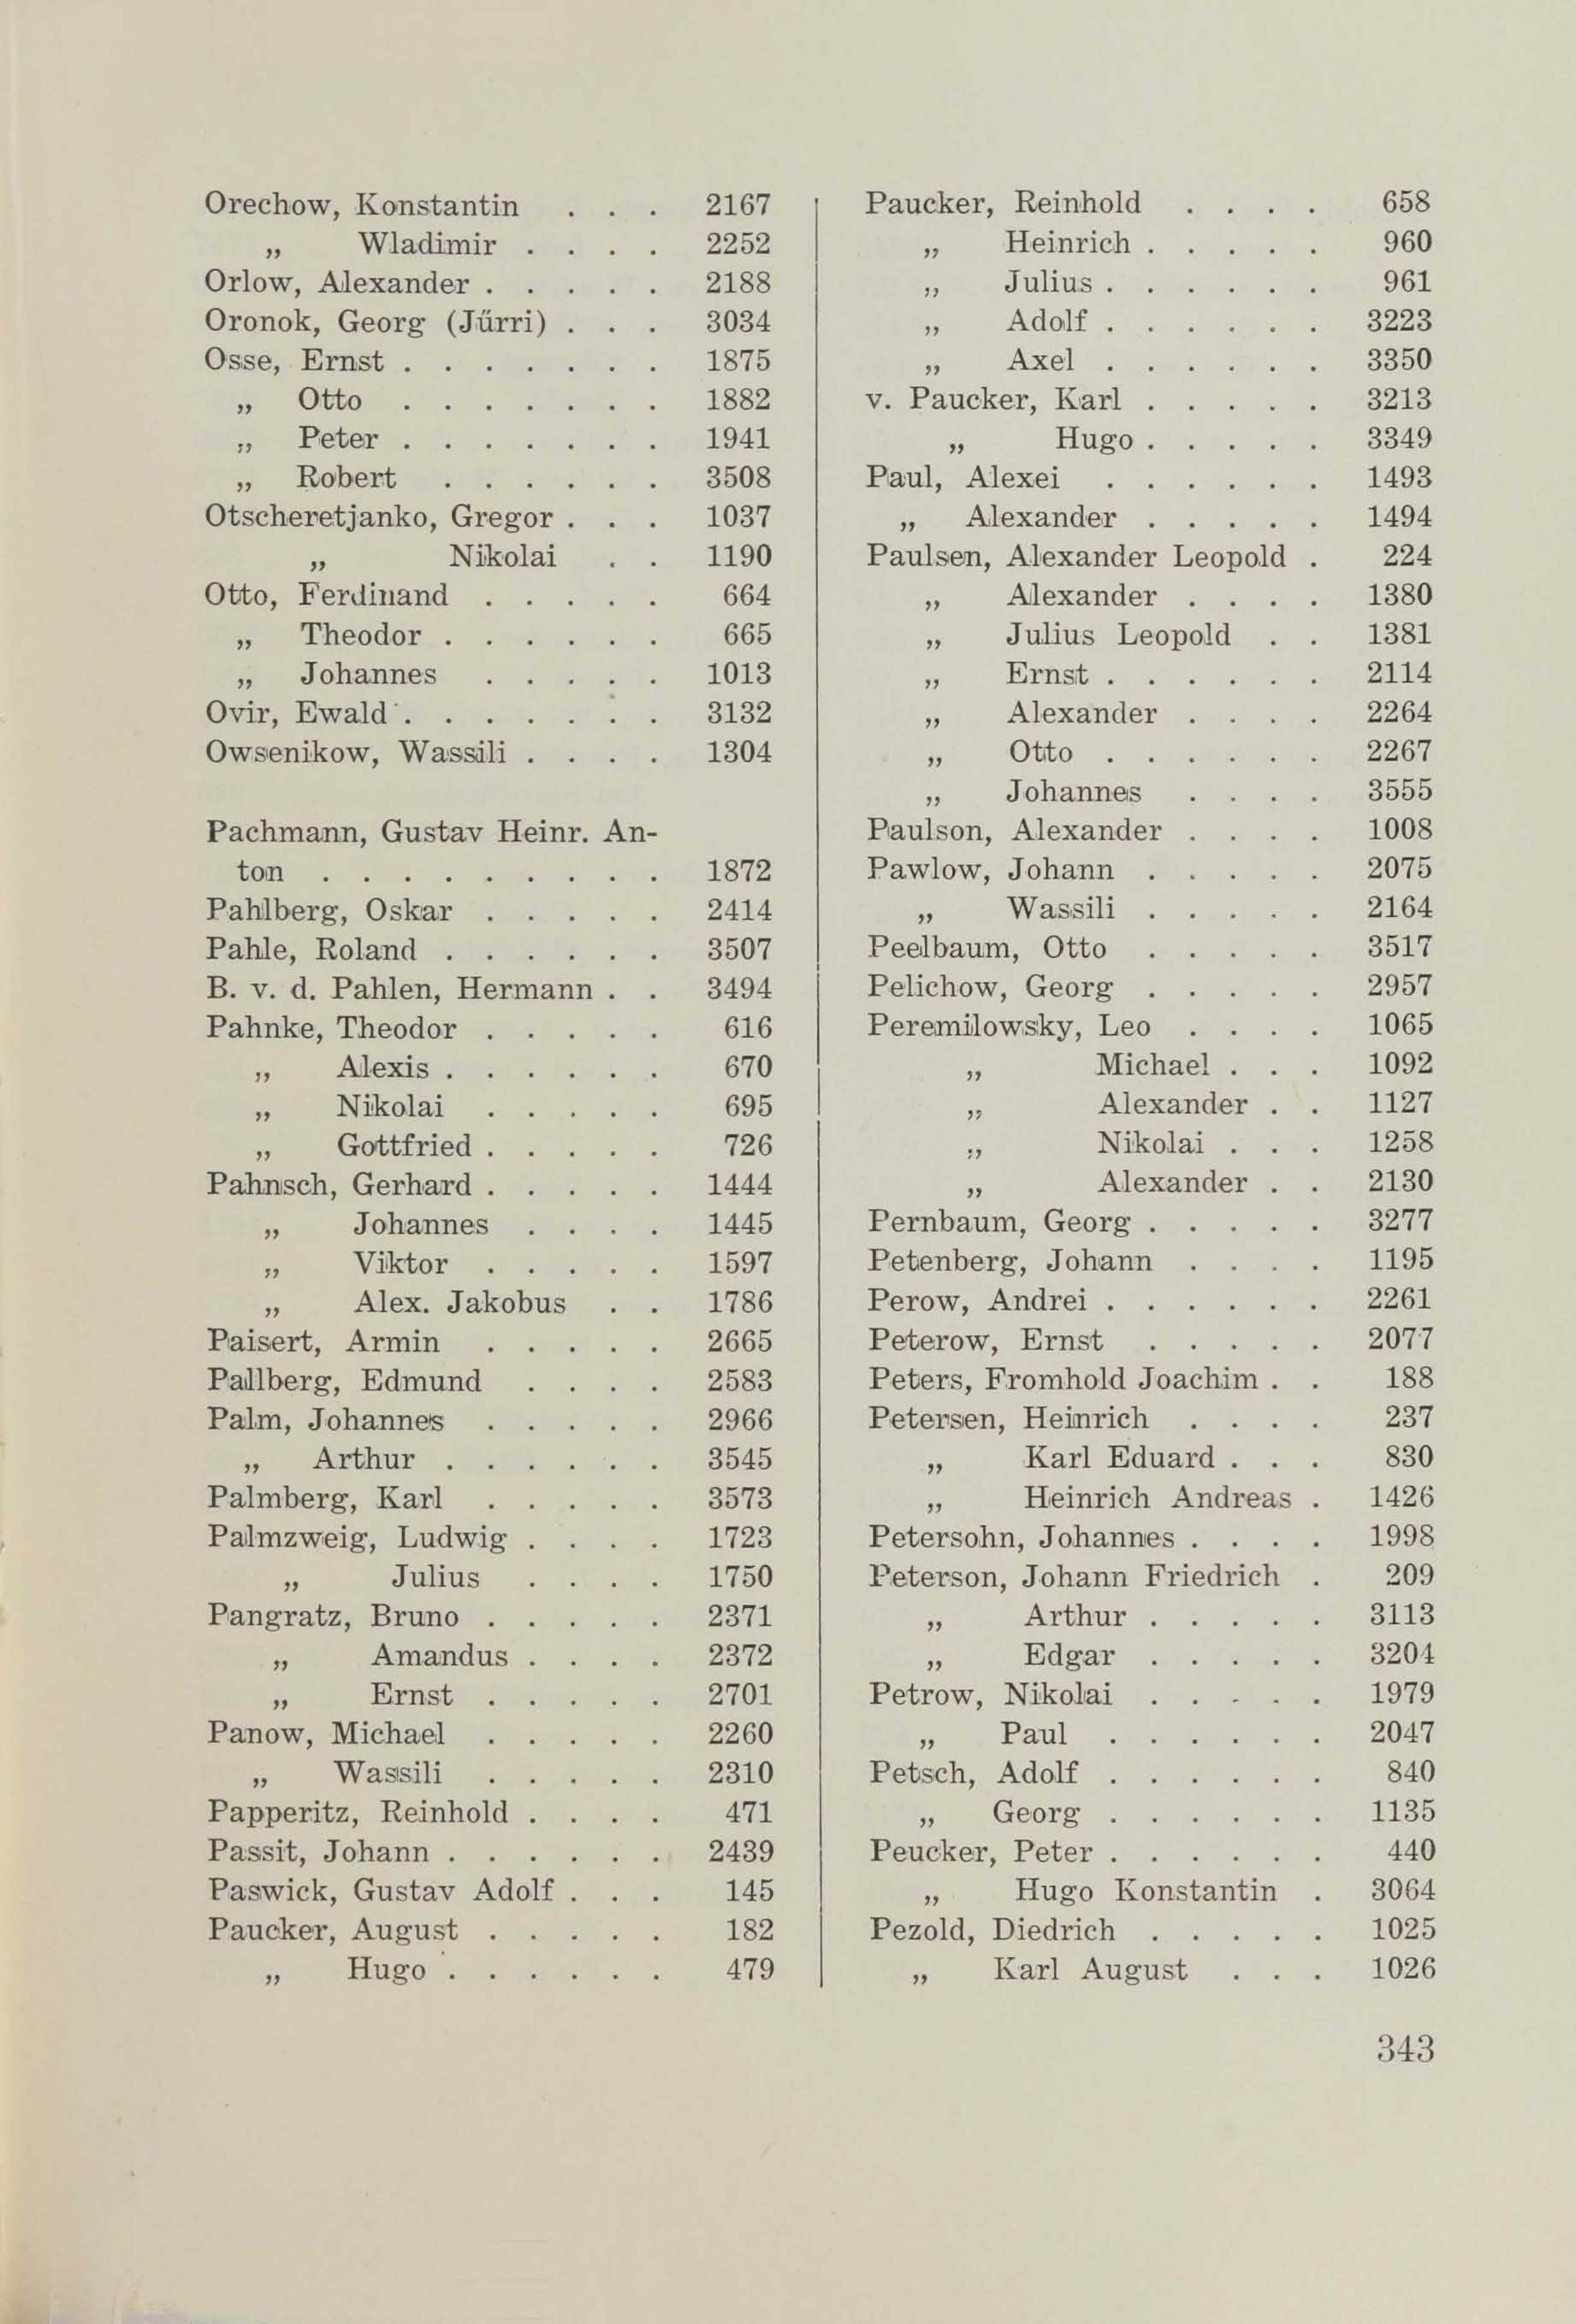 Schüler-Verzeichnis des Revalschen Gouvernements-Gymnasiums 1805–1890 (1931) | 353. (343) Main body of text